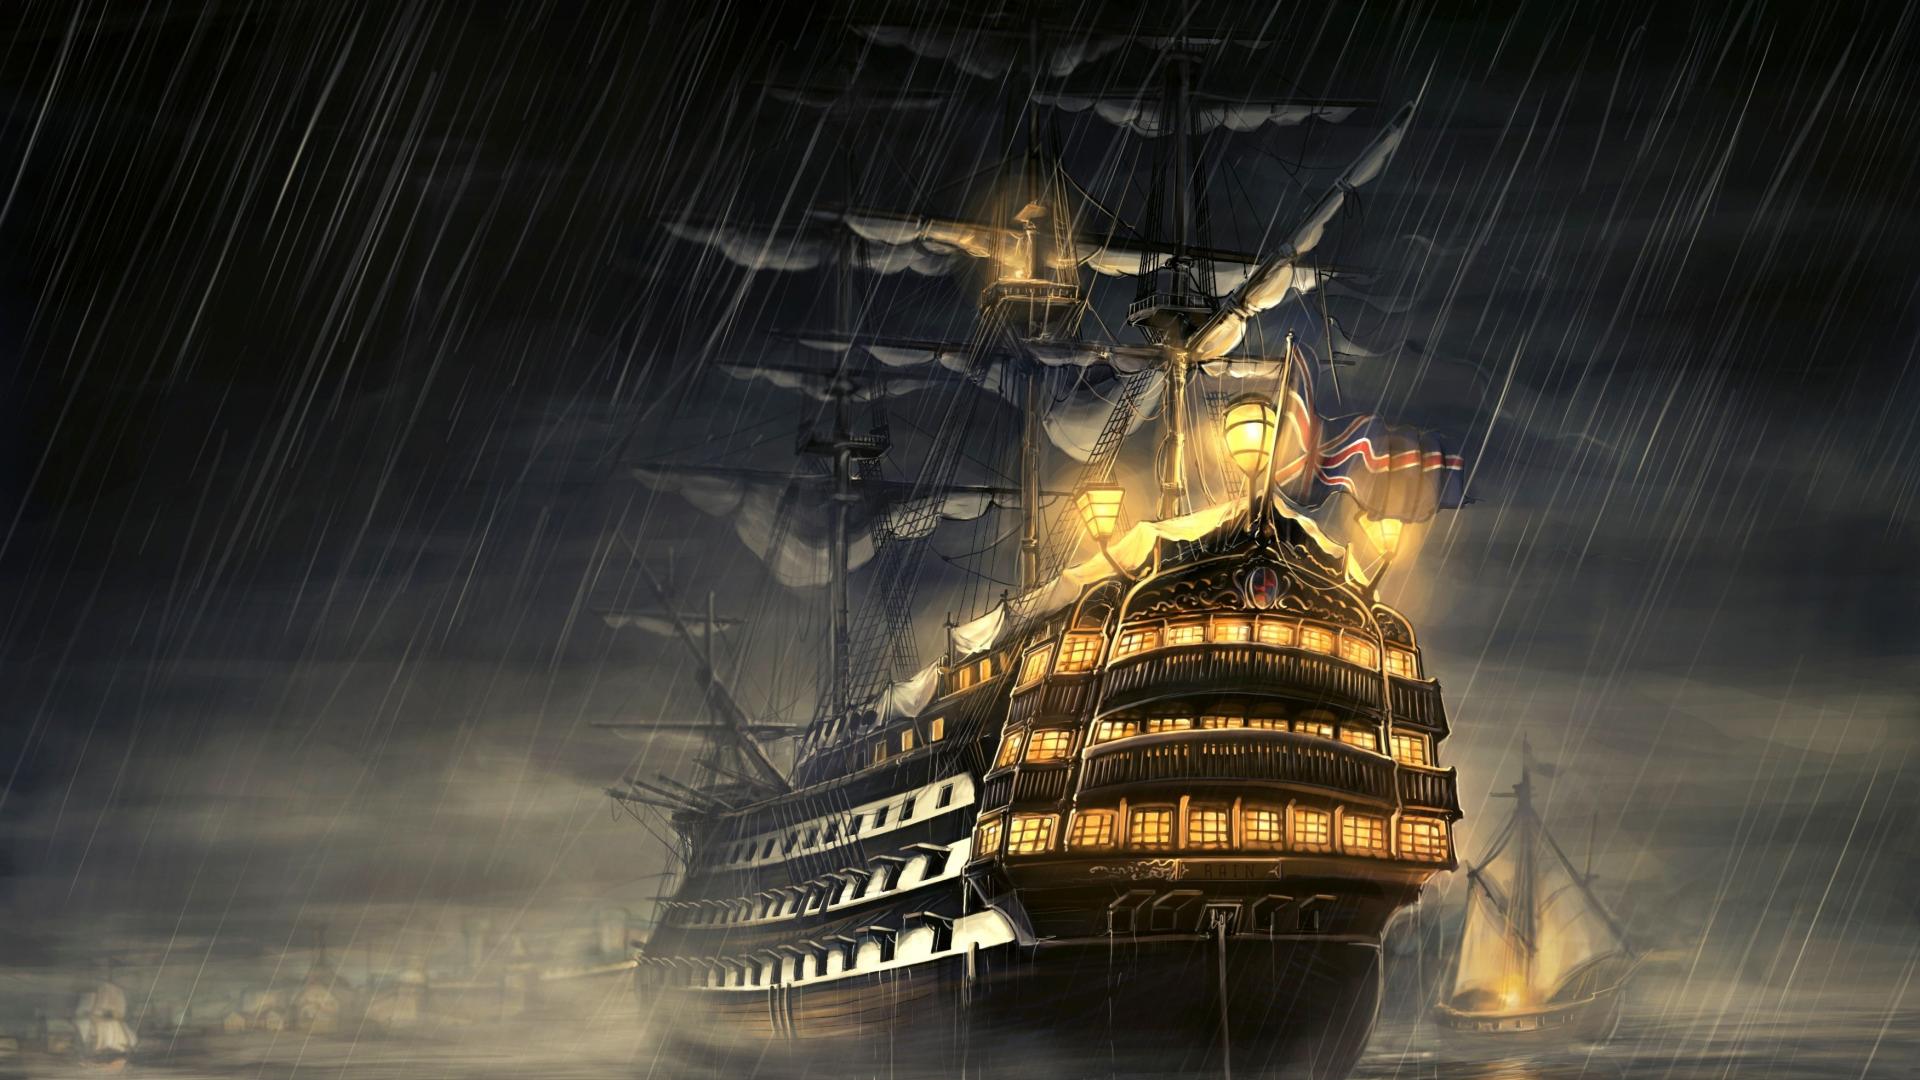 fond d'écran pirate hd,de premier ordre,bateau à voile,galion,navire de la ligne,navire